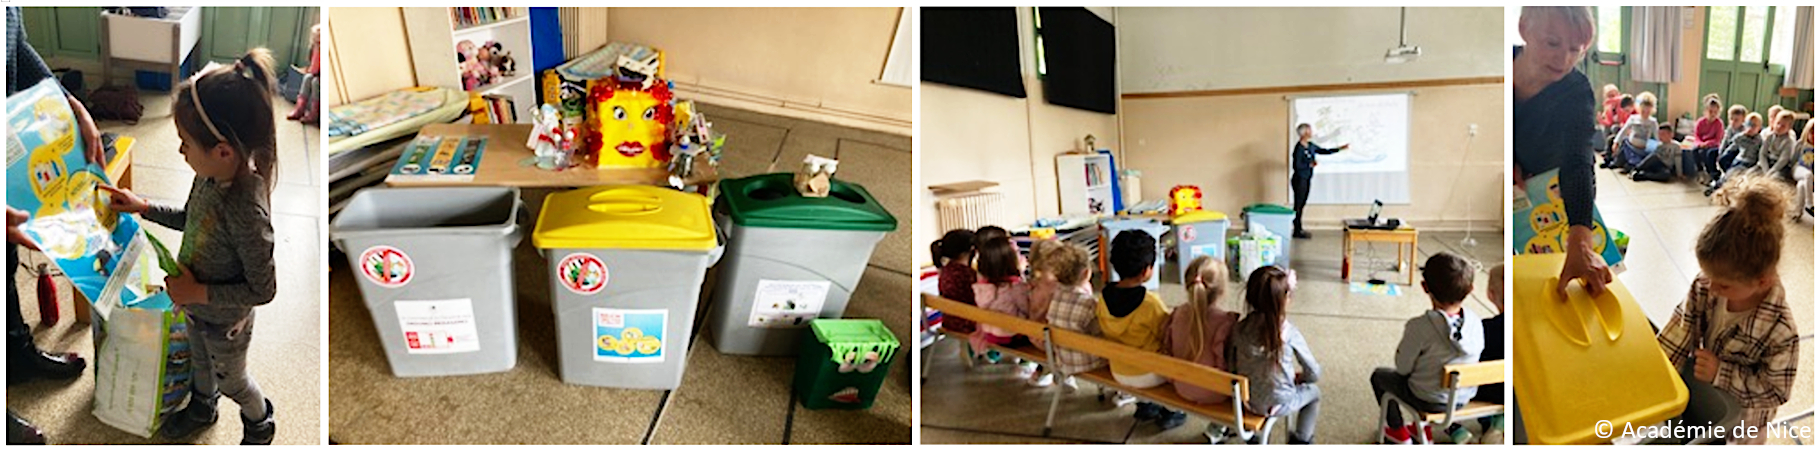 Apprentissage du tri des déchets à l'école maternelle de Sospel